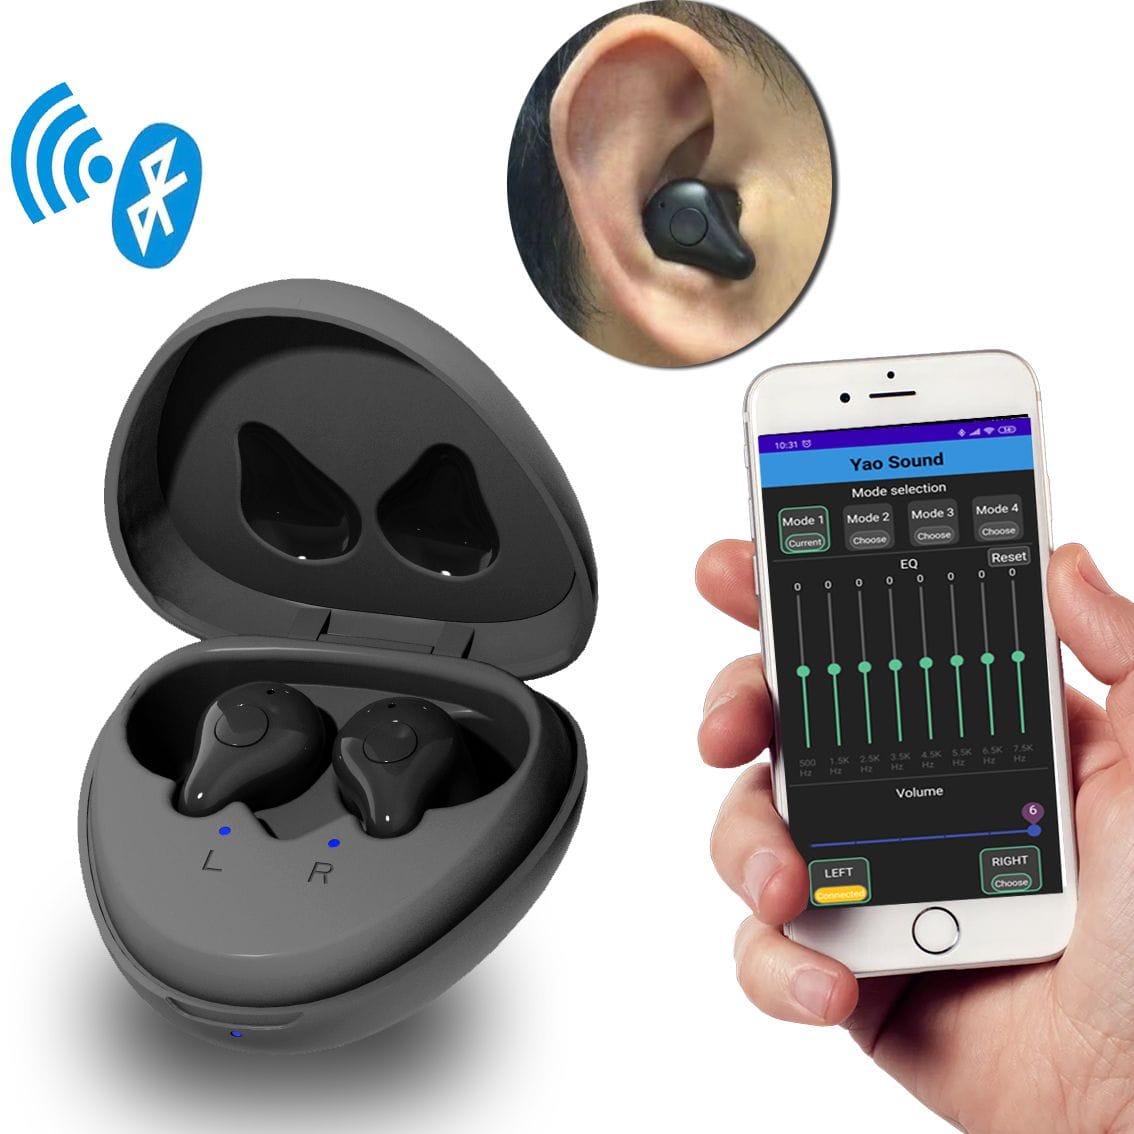 Nový pár sluchadel eEAR a Bluetooth (BT) sluchátek vše v jednom pro pravé a levé ucho. Nejmodernější technologie se snadno použitelnými aplikacemi pro naslouchání. Jediný svého druhu v odvětví sluchadel. Nejlepší kvalita za dostupné ceny.